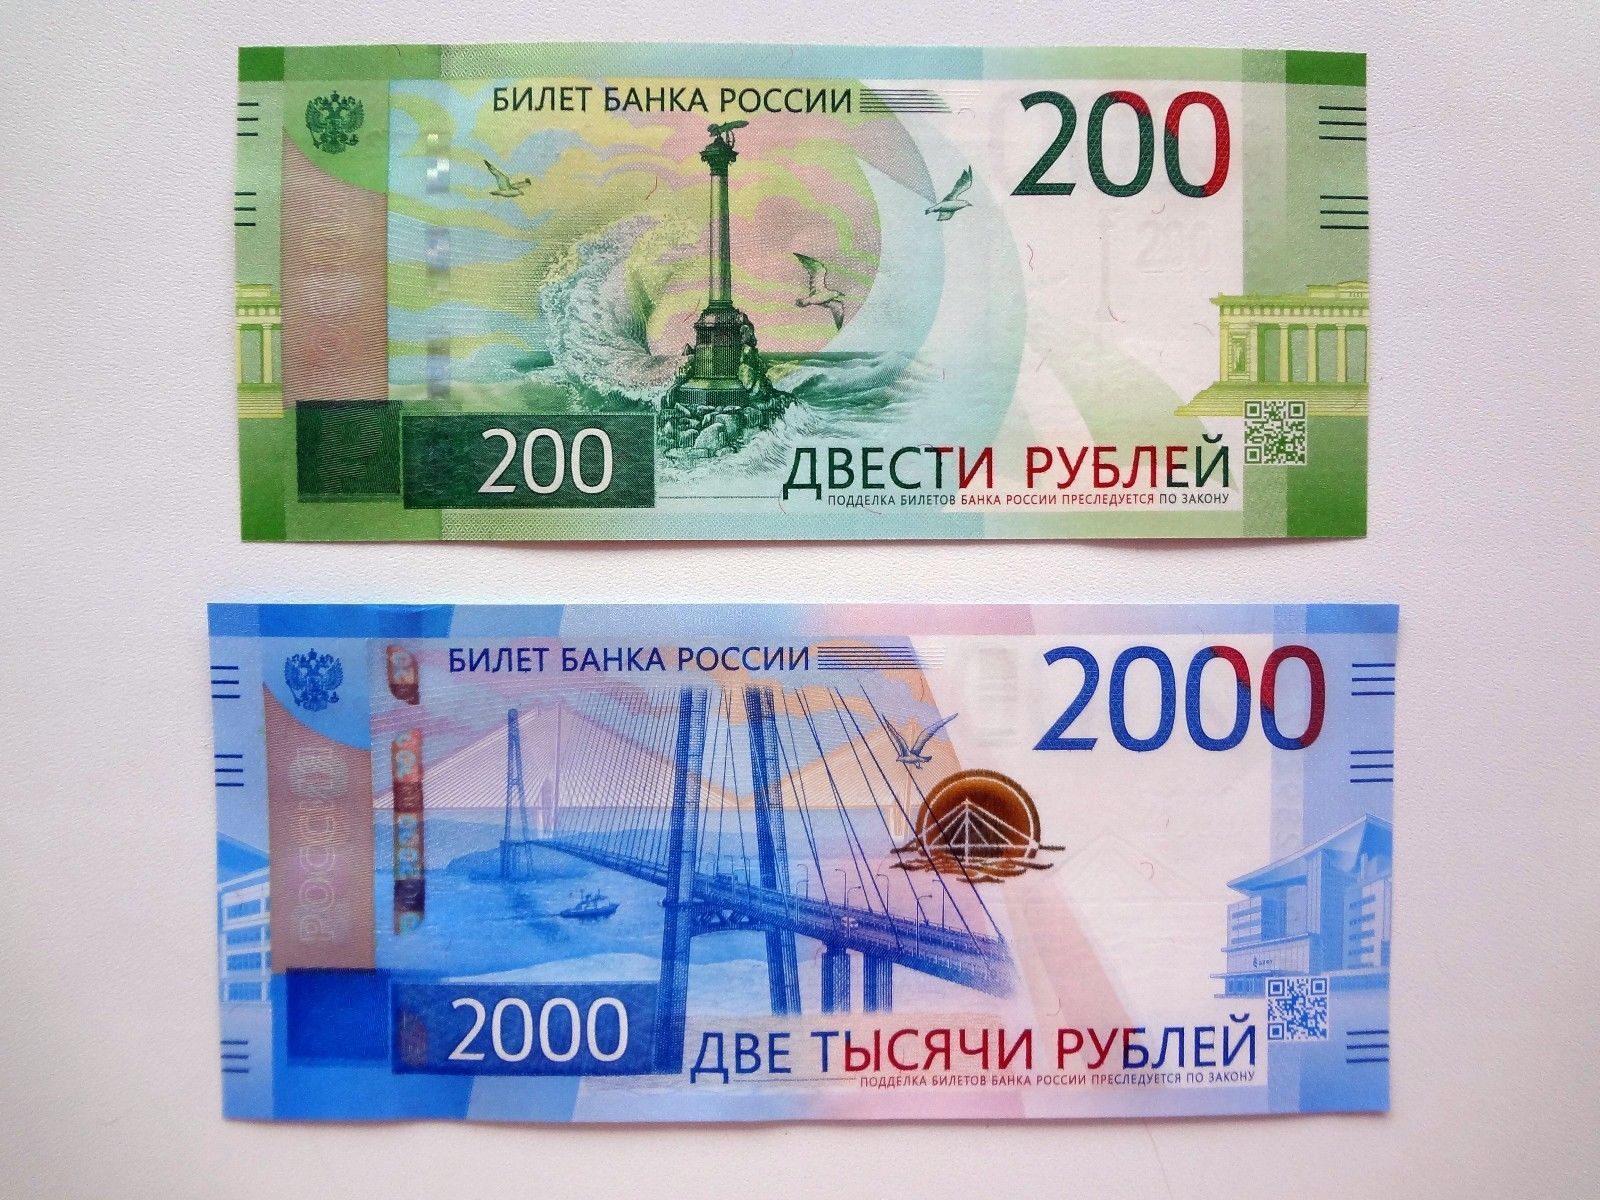 Код 200 рублей. Билет банка России 2000 рублей. Купюра 200 рублей. 200 И 2000 рублей. Купюры 200 и 2000.